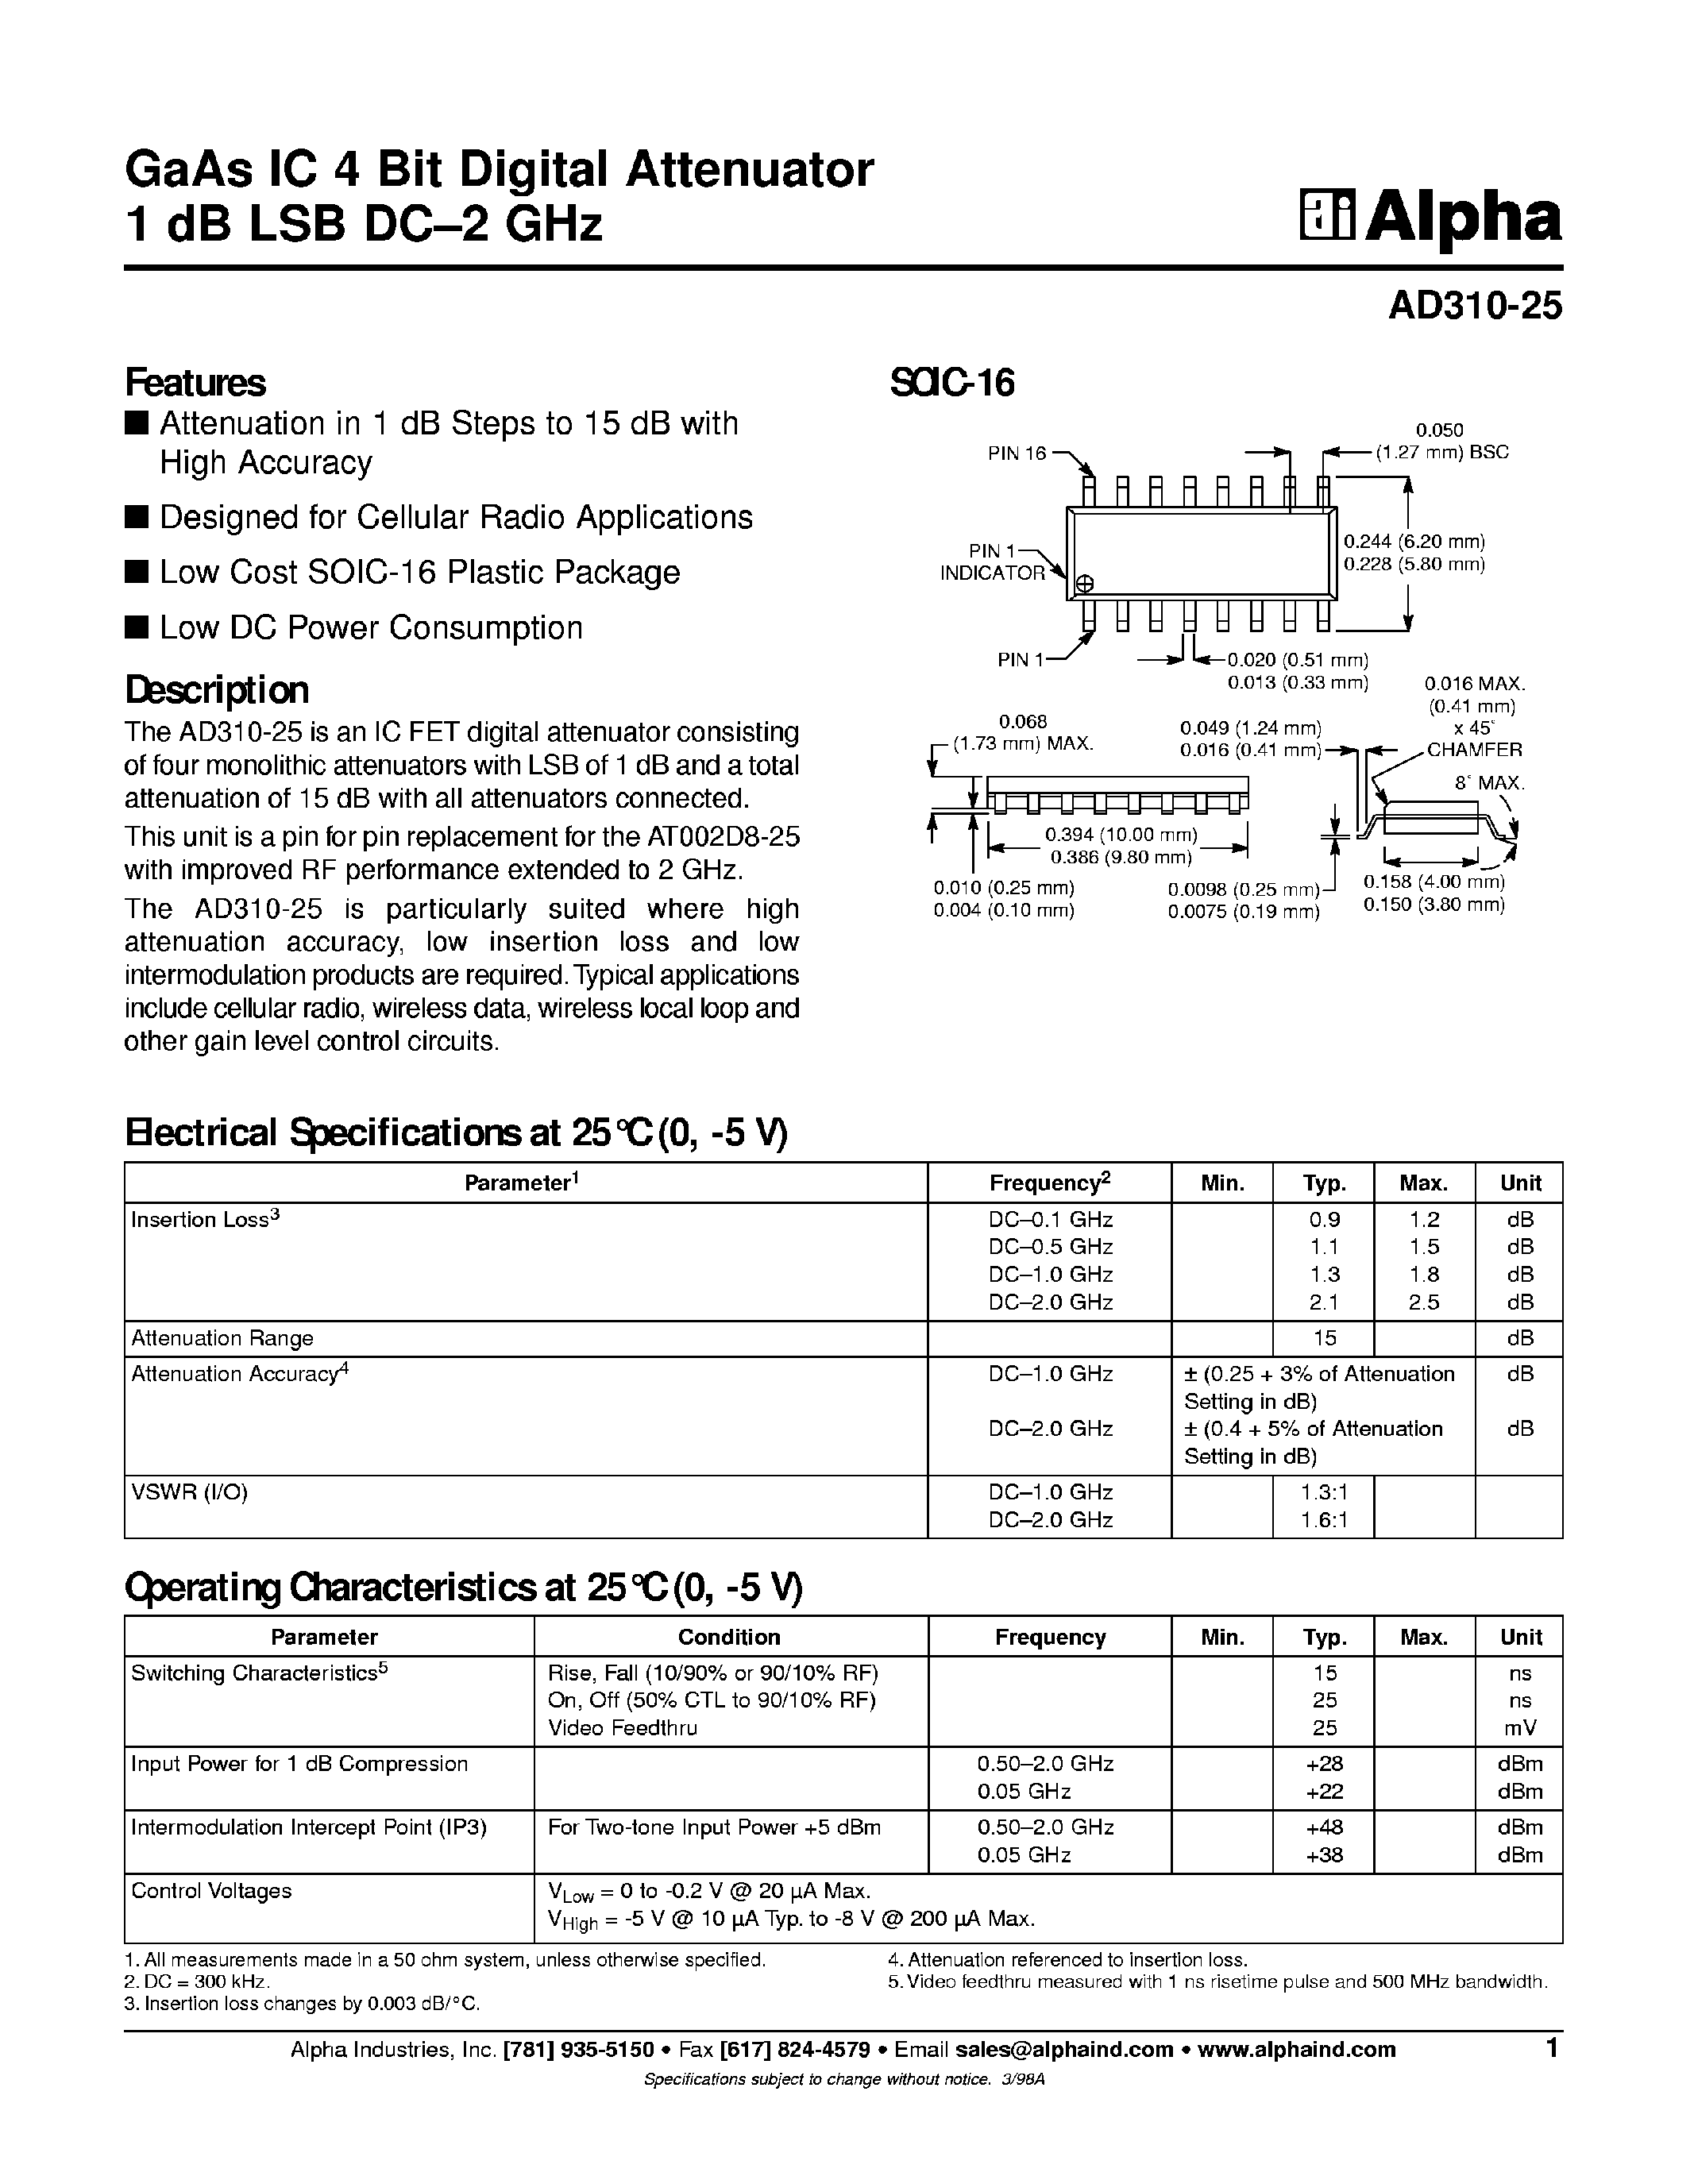 Datasheet AD310-25 - GaAs IC 4-Bit Digital Attenuator page 1